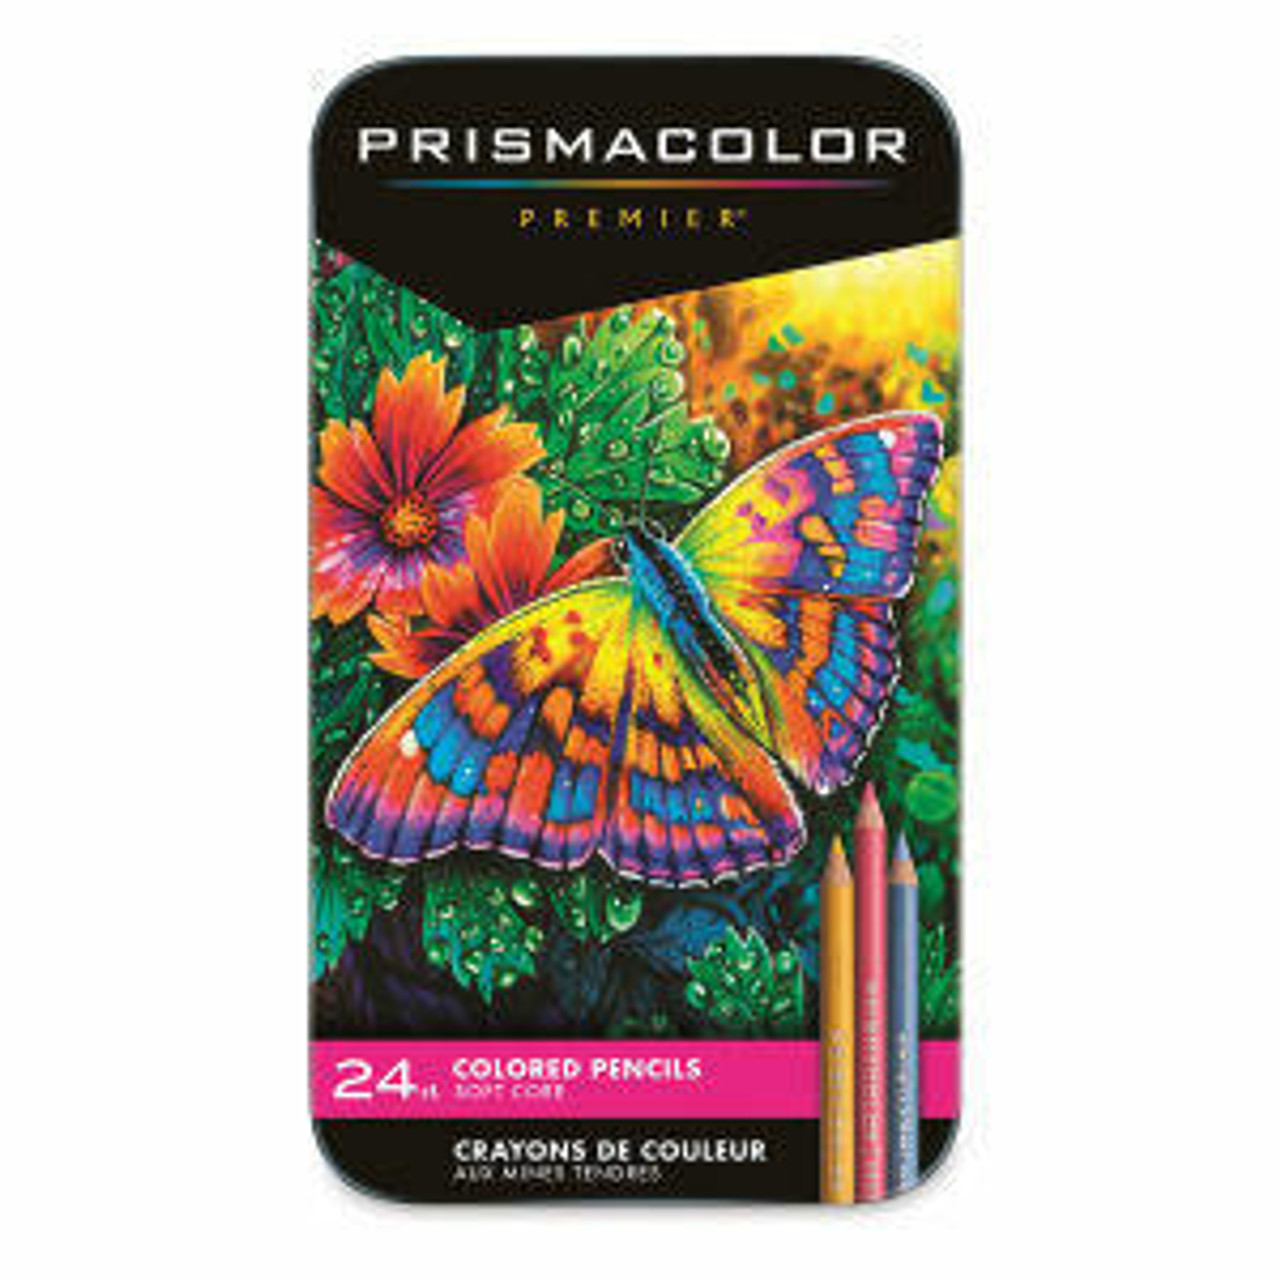 https://cdn11.bigcommerce.com/s-9uf88xhege/images/stencil/1280x1280/products/8683/27167/prismacolor-premier-thick-core-colored-pencil-set-24-color-set__37513.1690489663.jpg?c=1